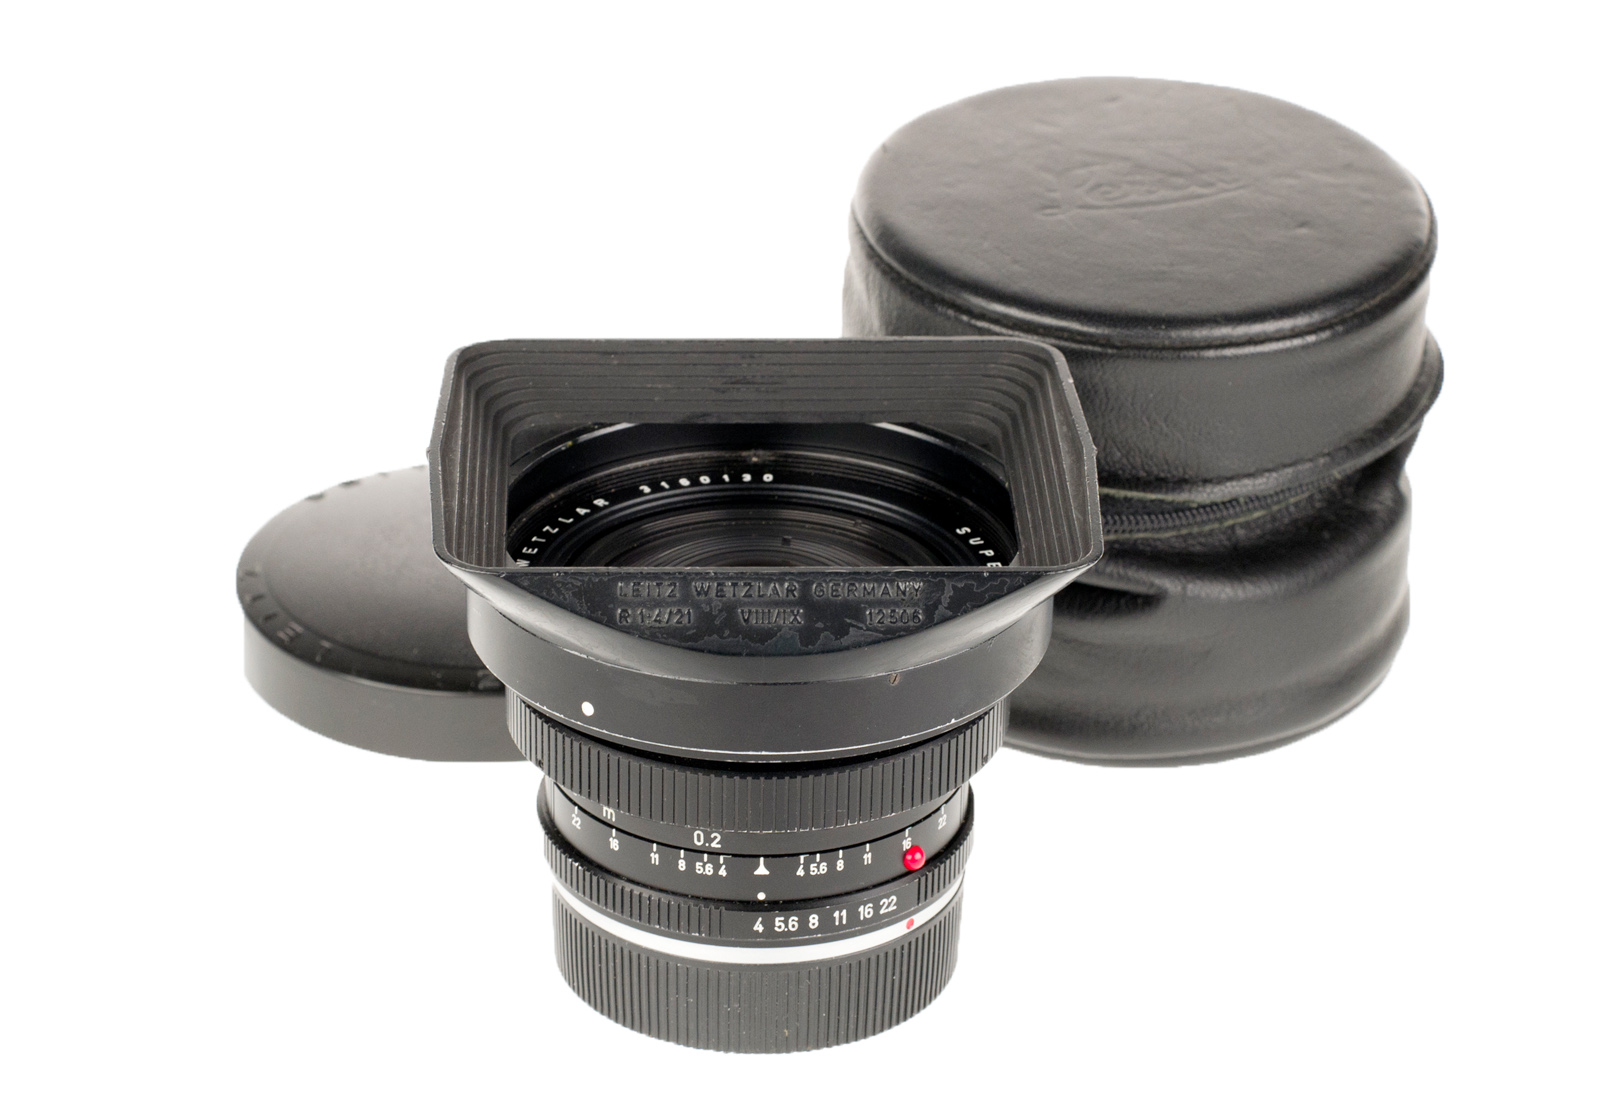 Leica Super-Angulon-R 1:4/21mm, black 11813 